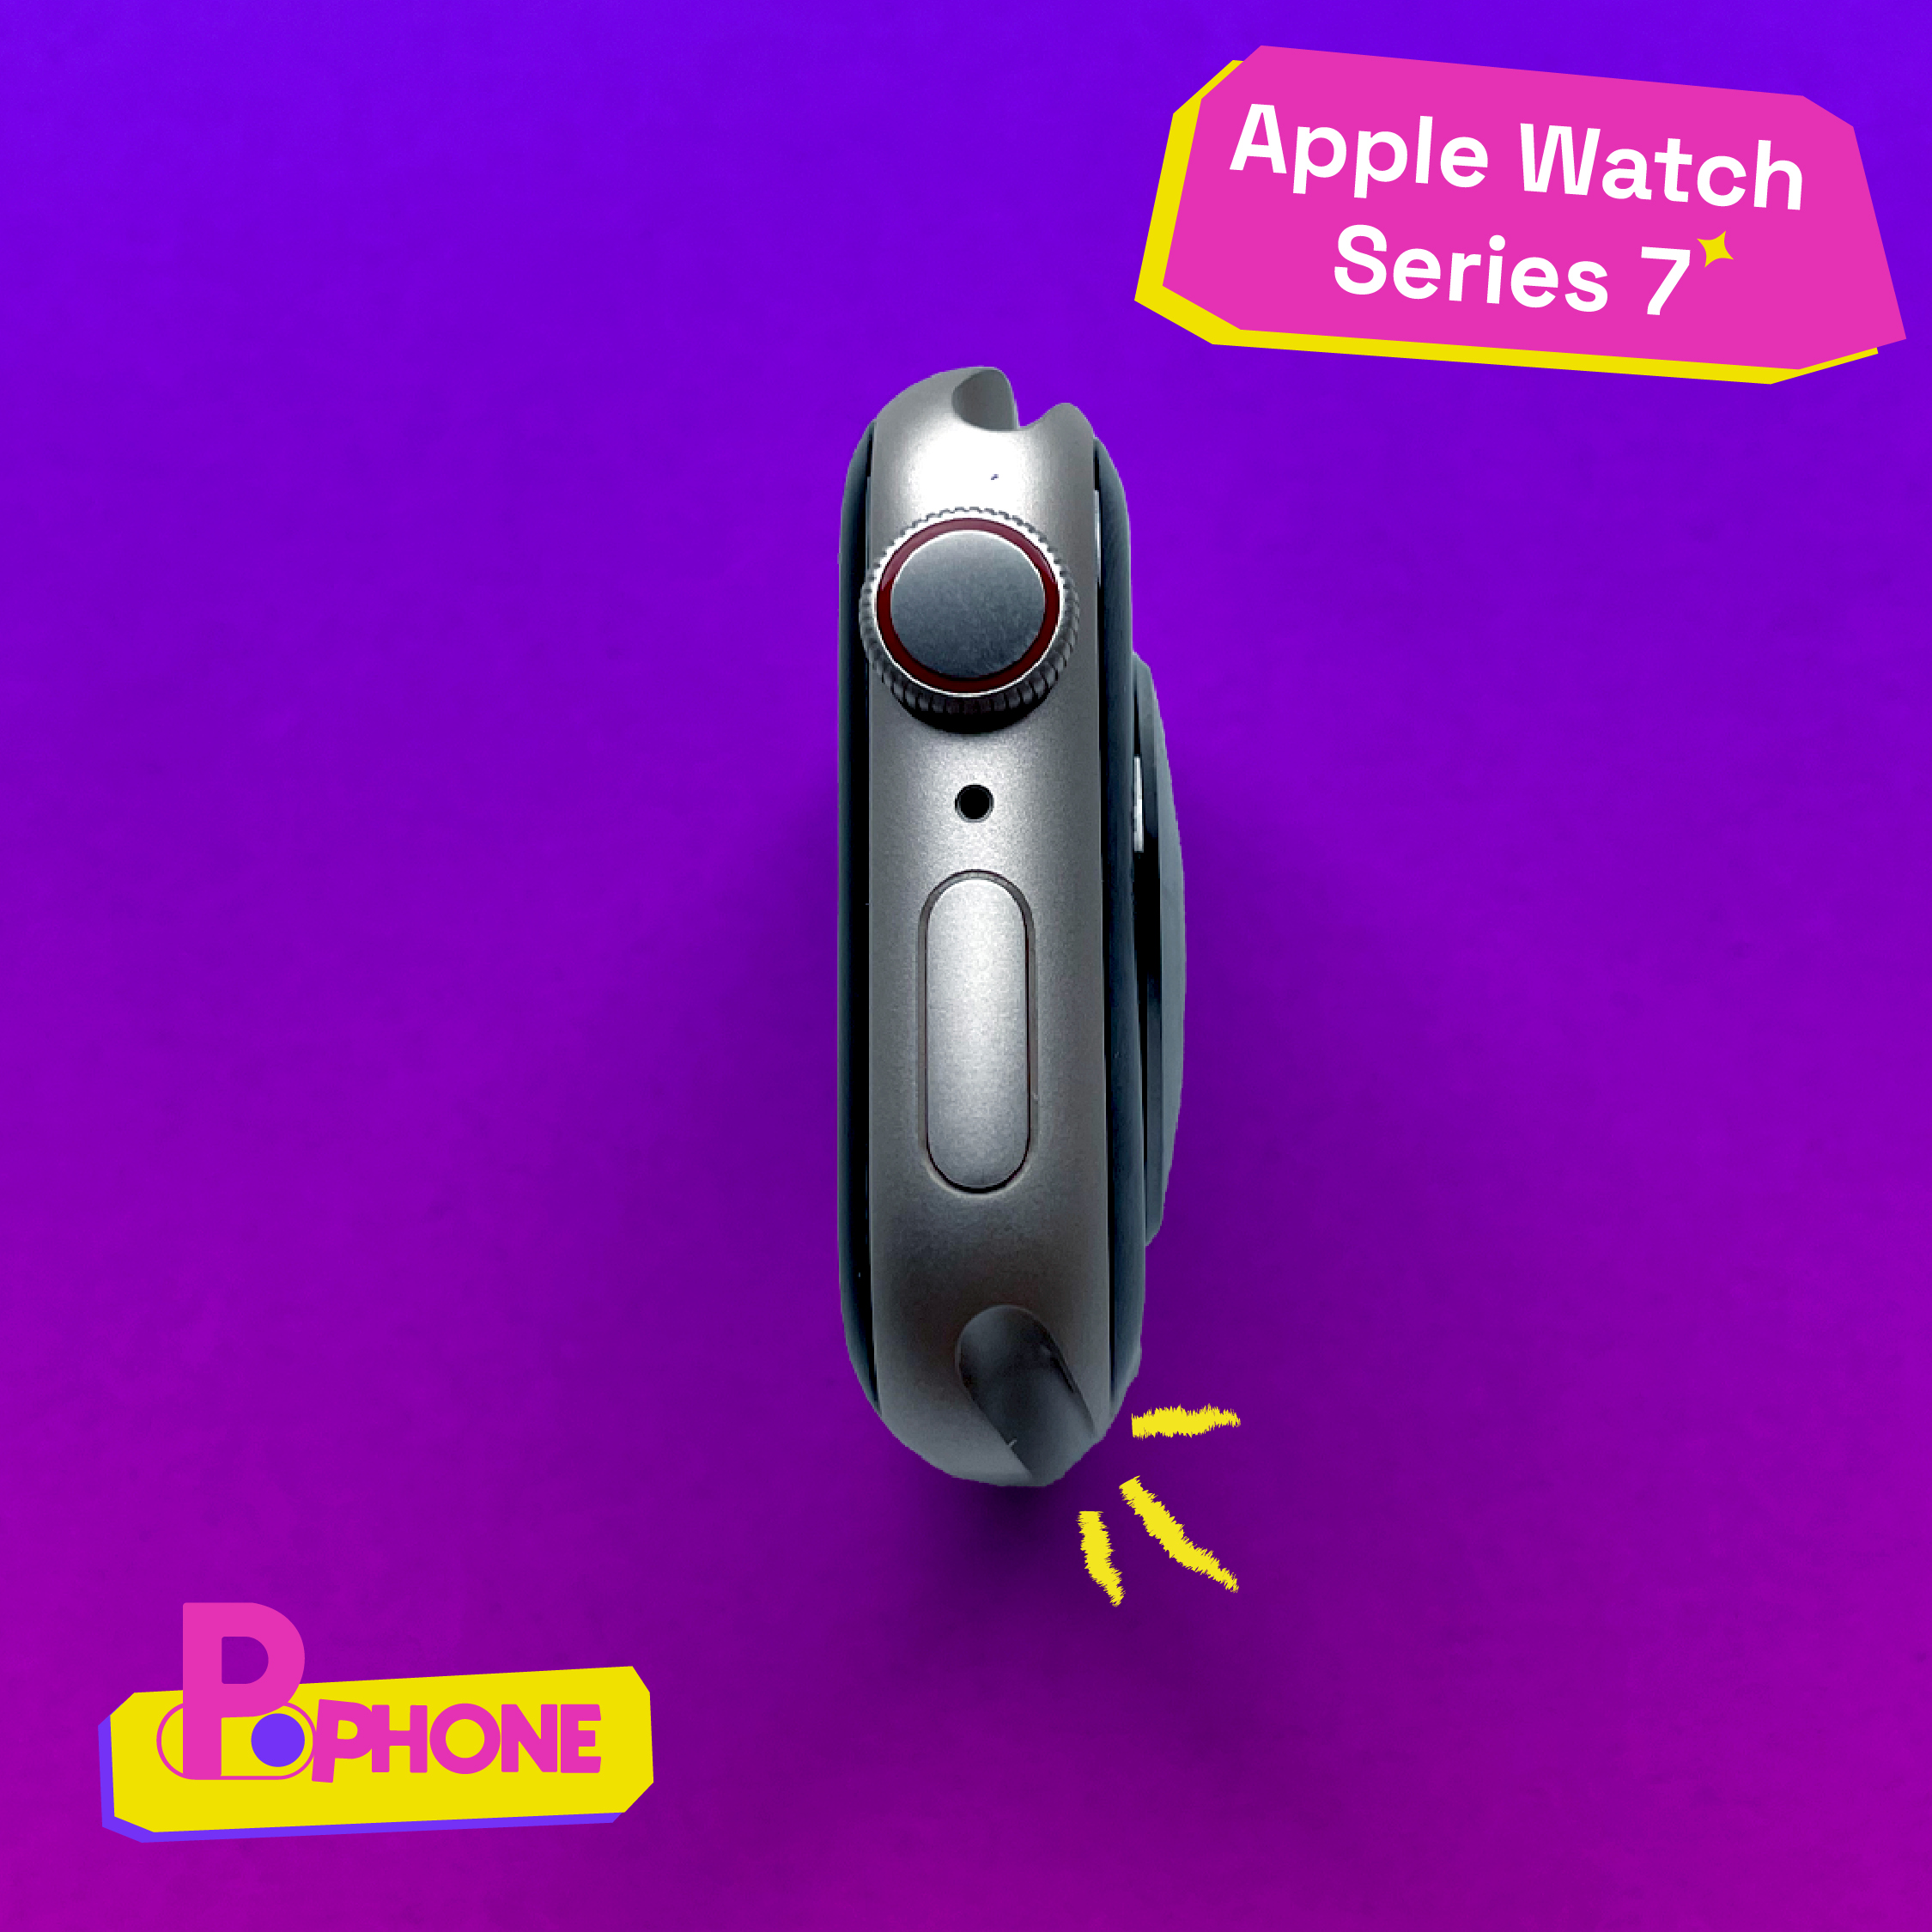 Apple Watch Serries 7